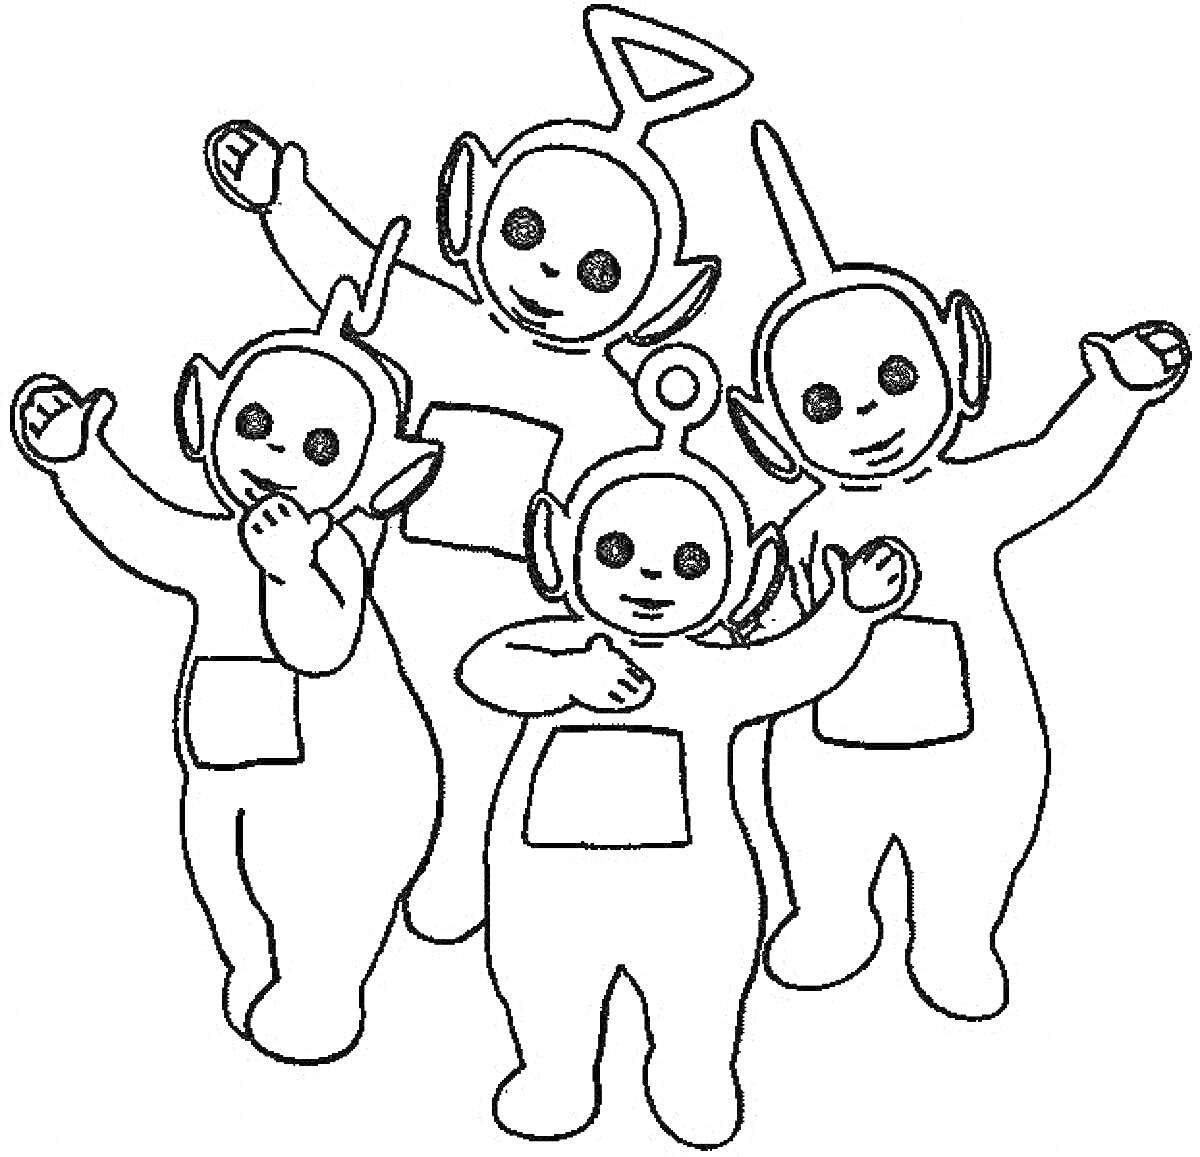 Телепузики: четыре персонажа в полный рост с антеннами на головах